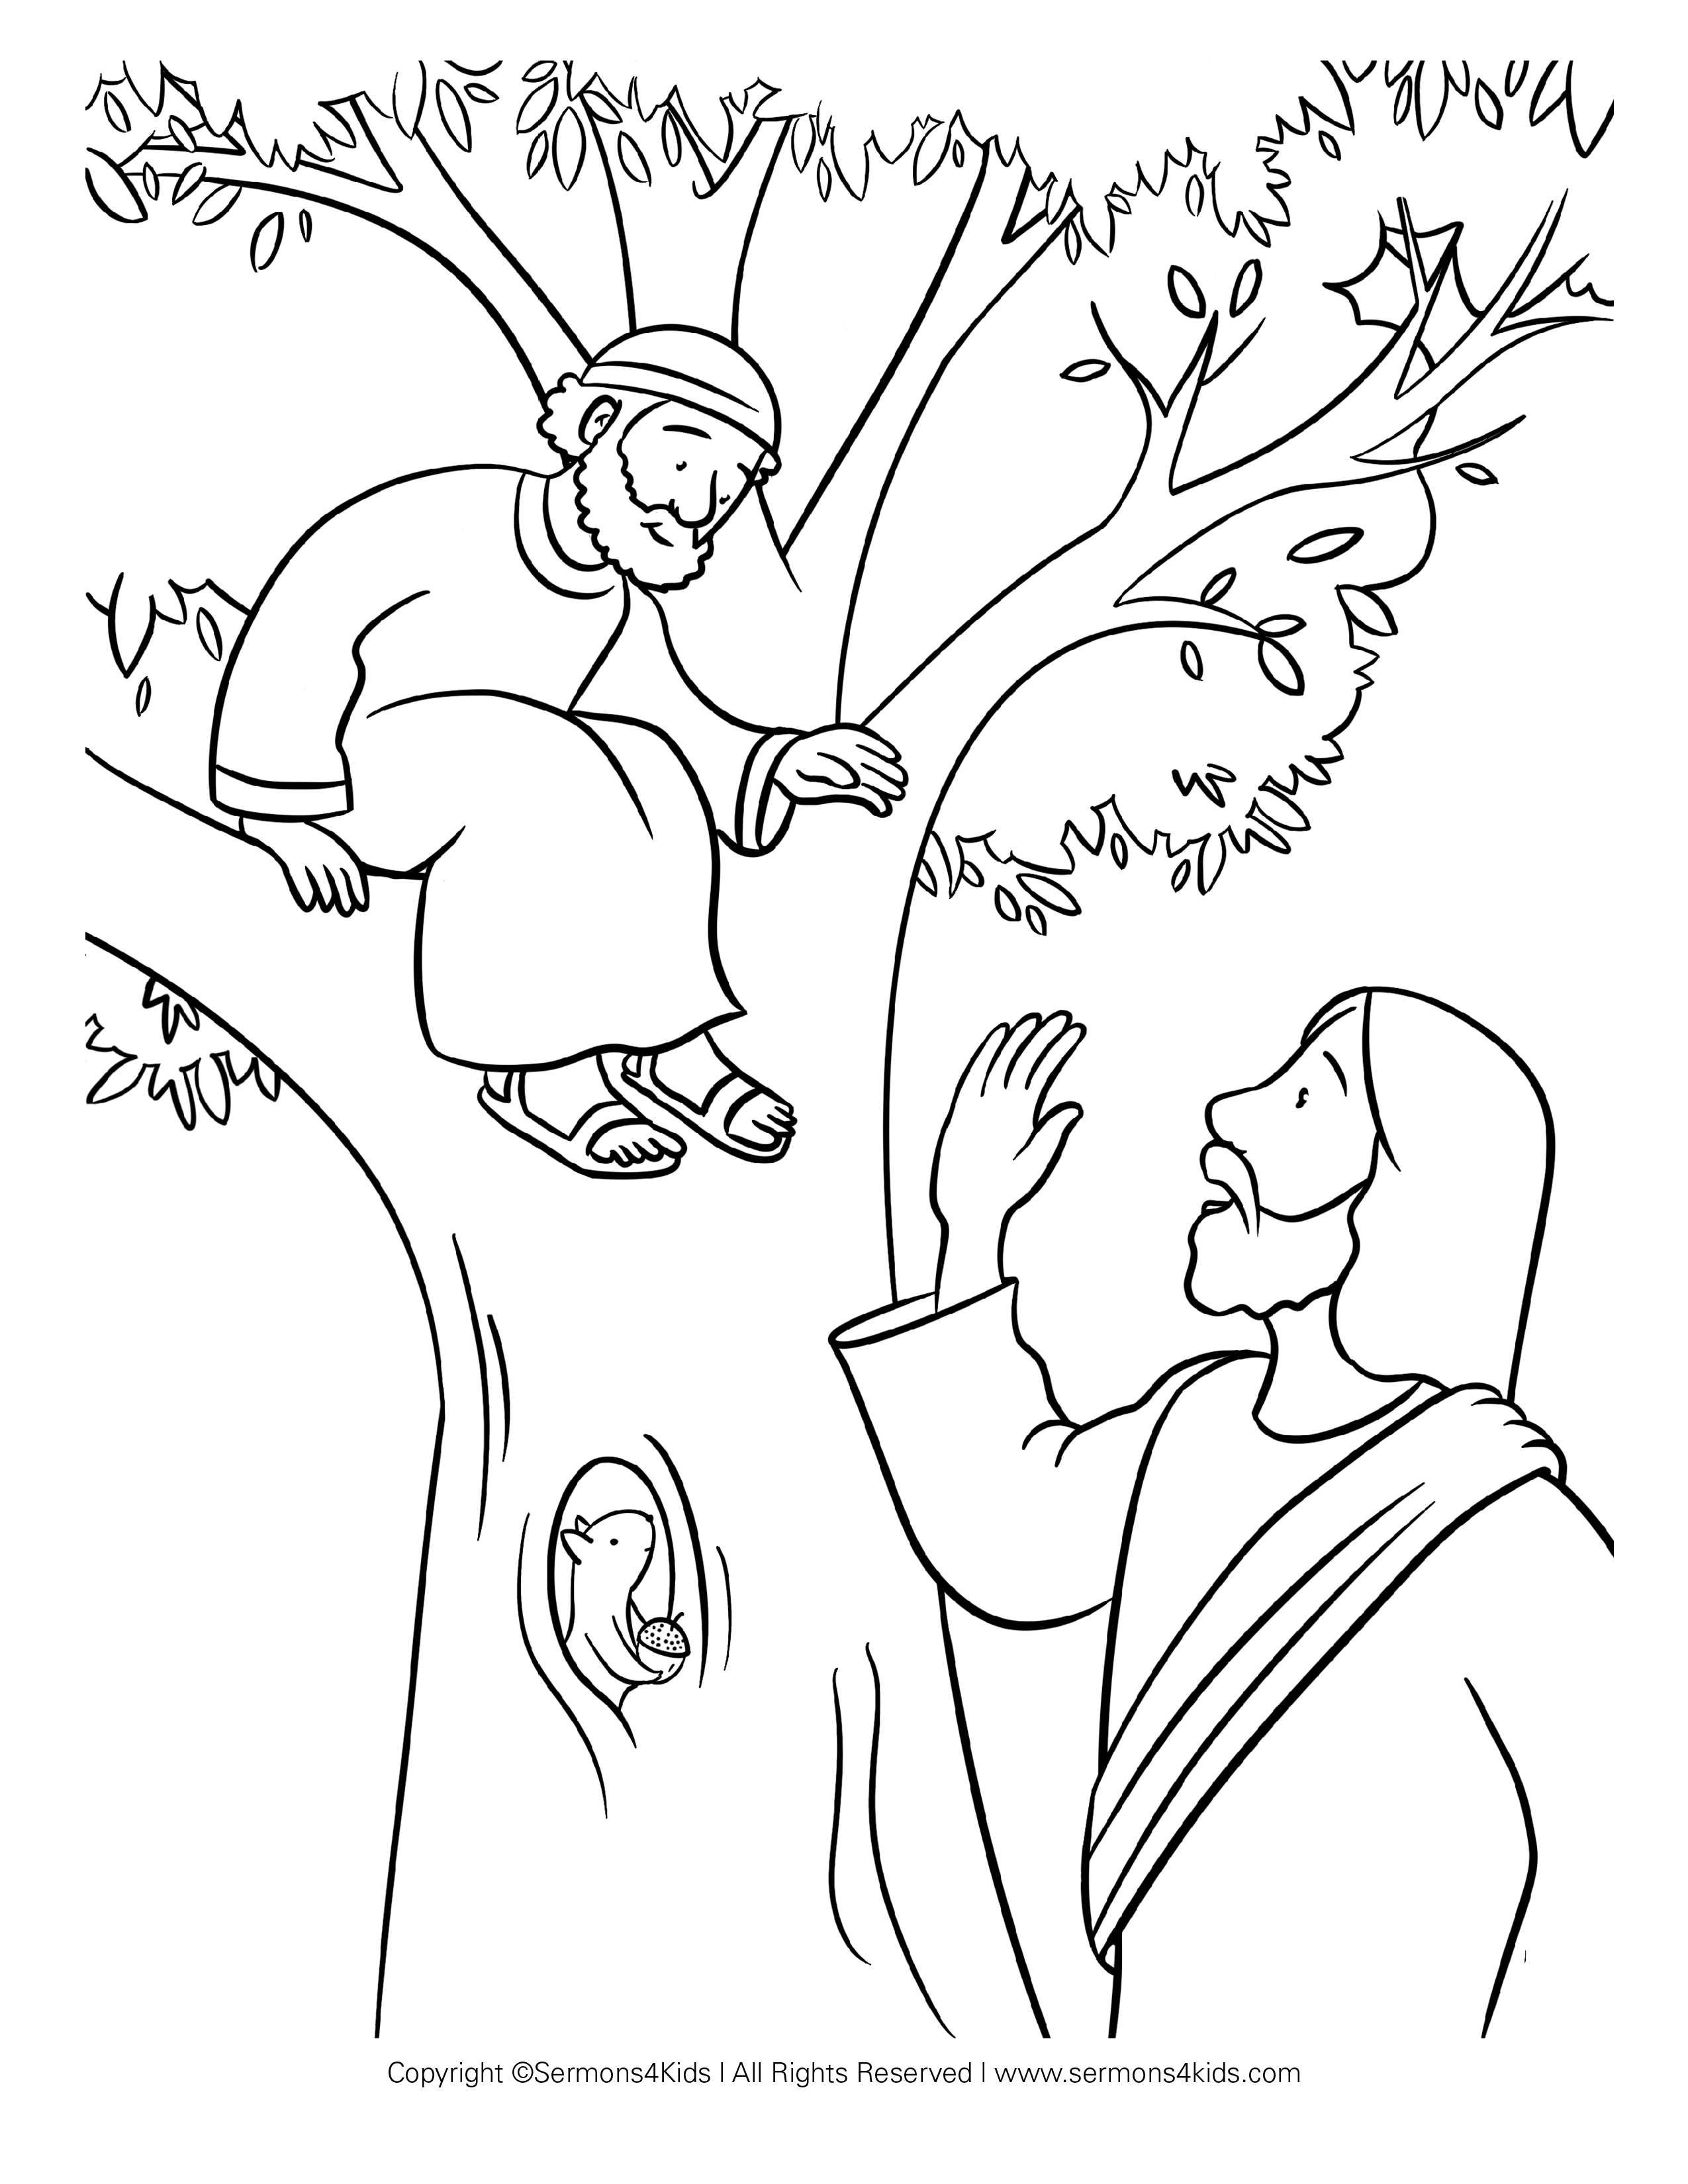 Zacchaeus-Jesus-sycamore-tree